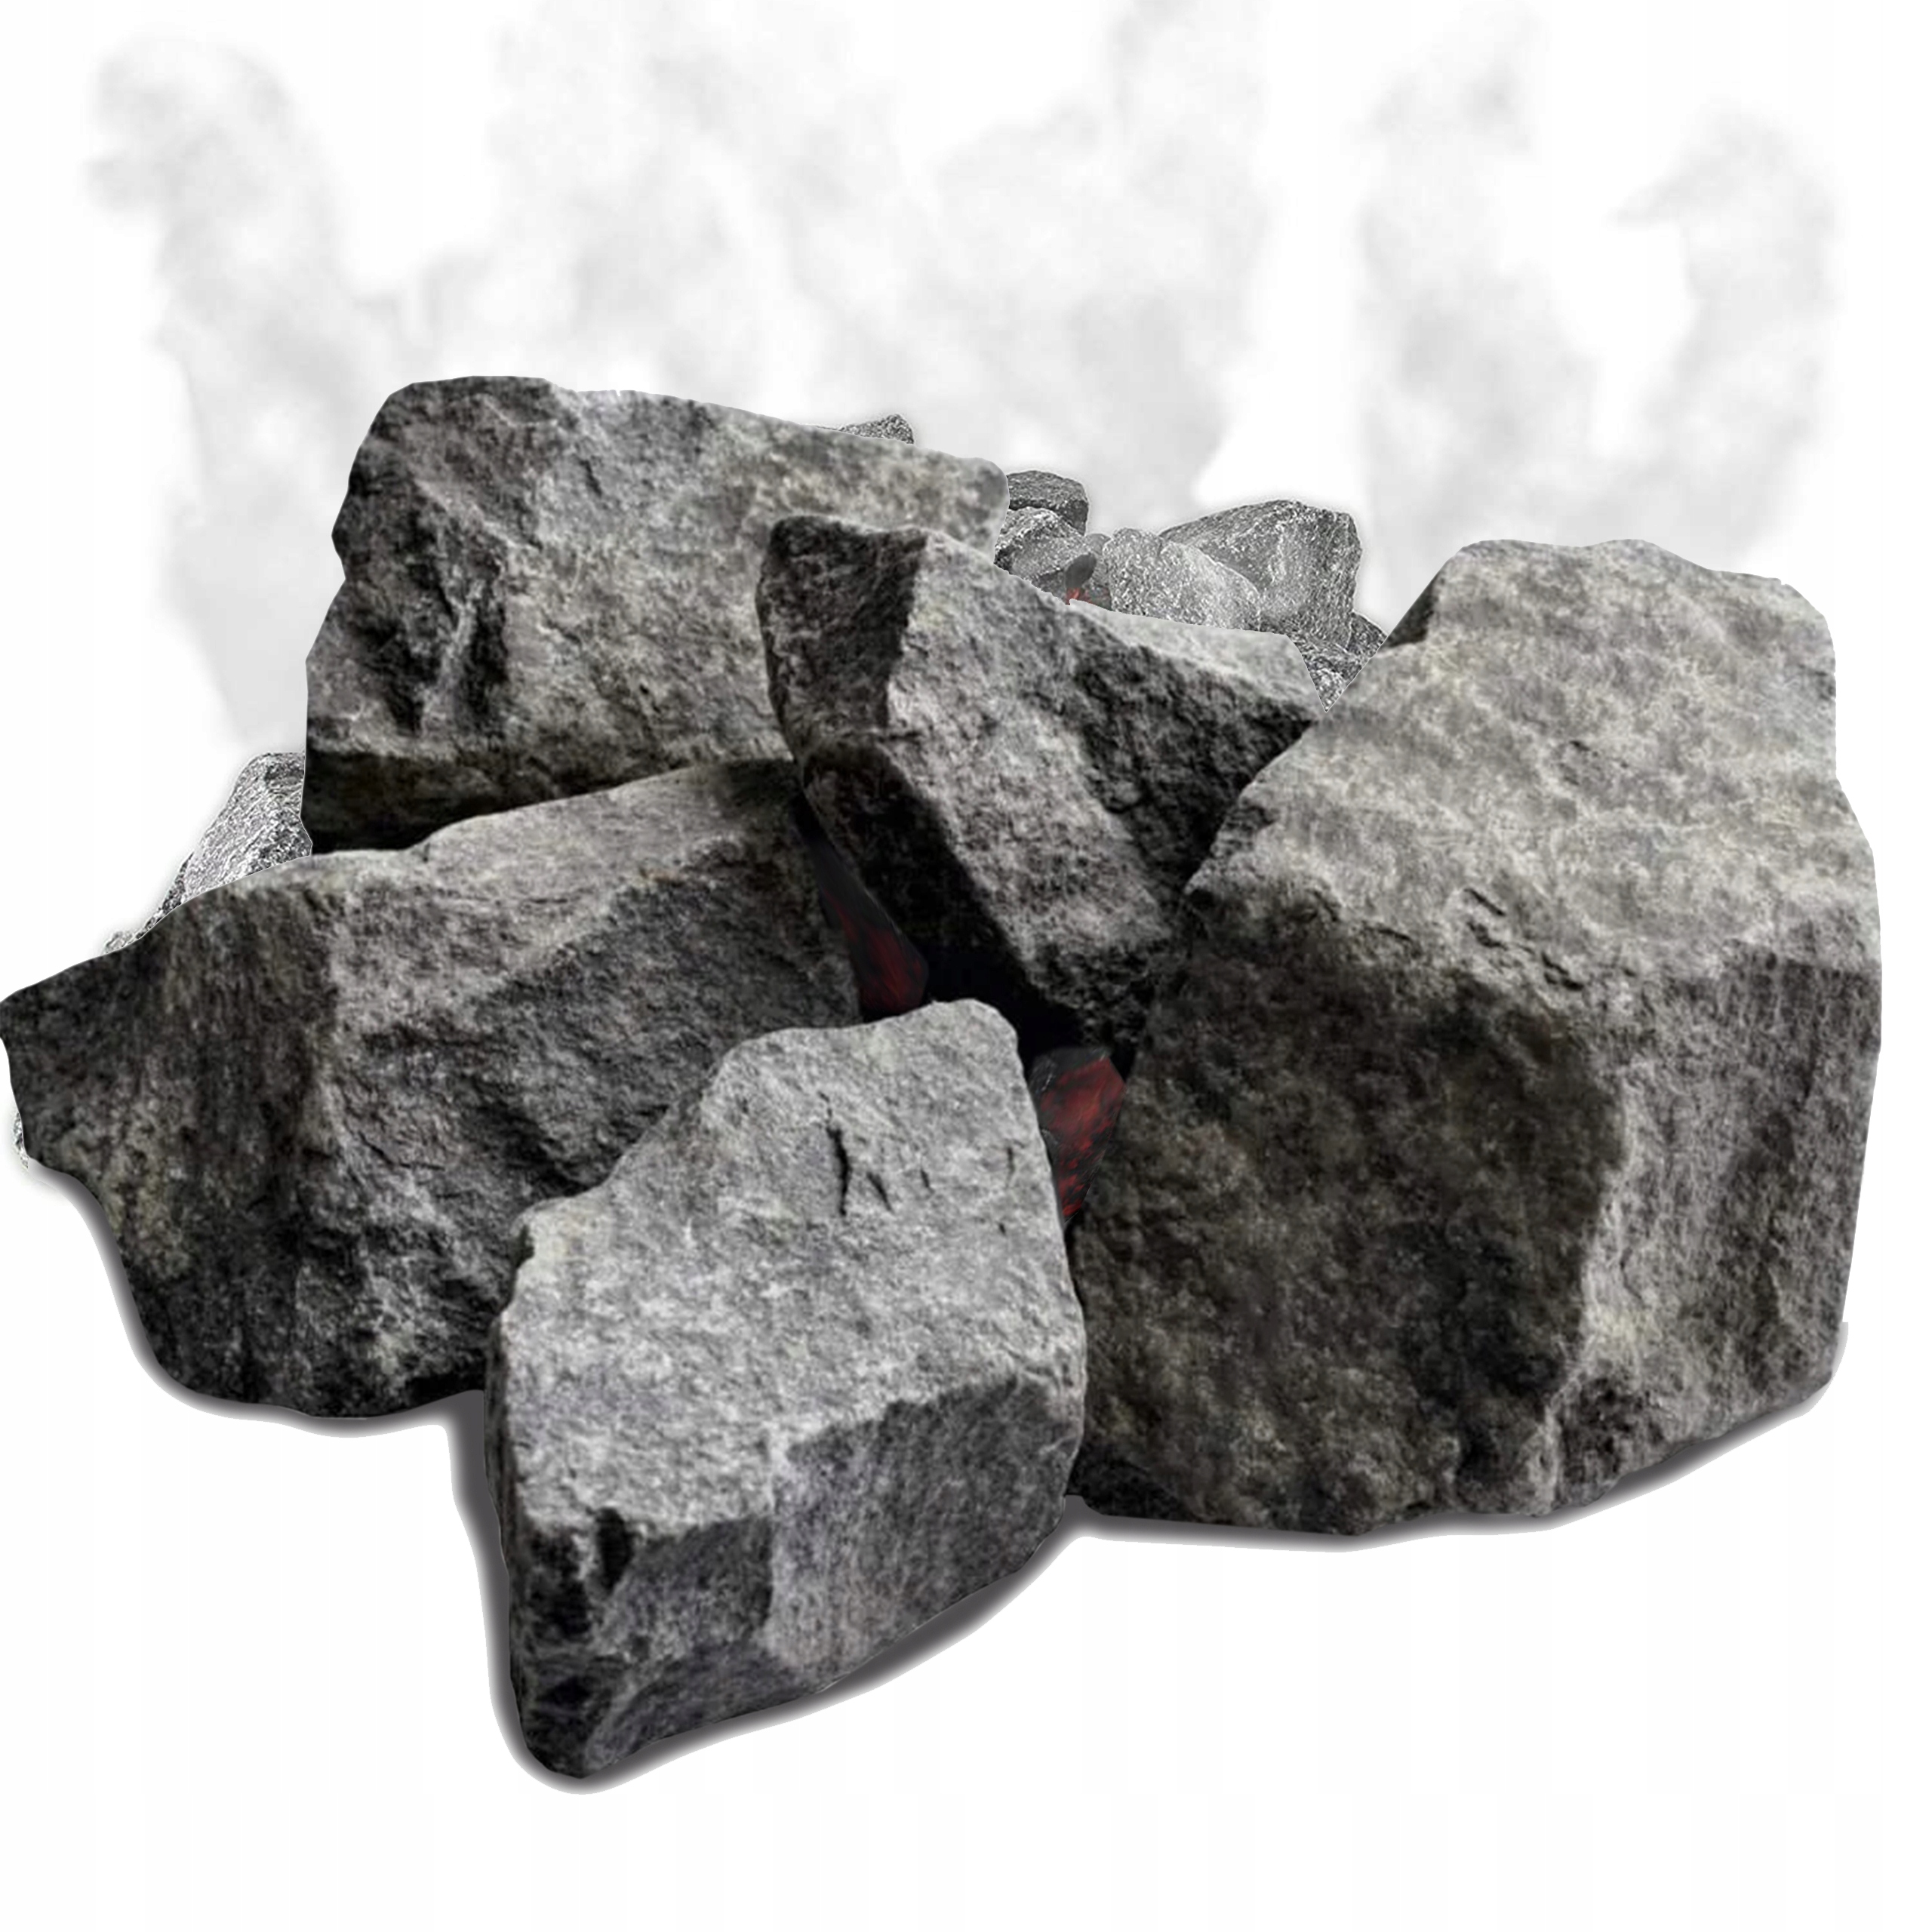 Oliwin Diabazowy - Najlepszy Kamień do Sauny 10KG